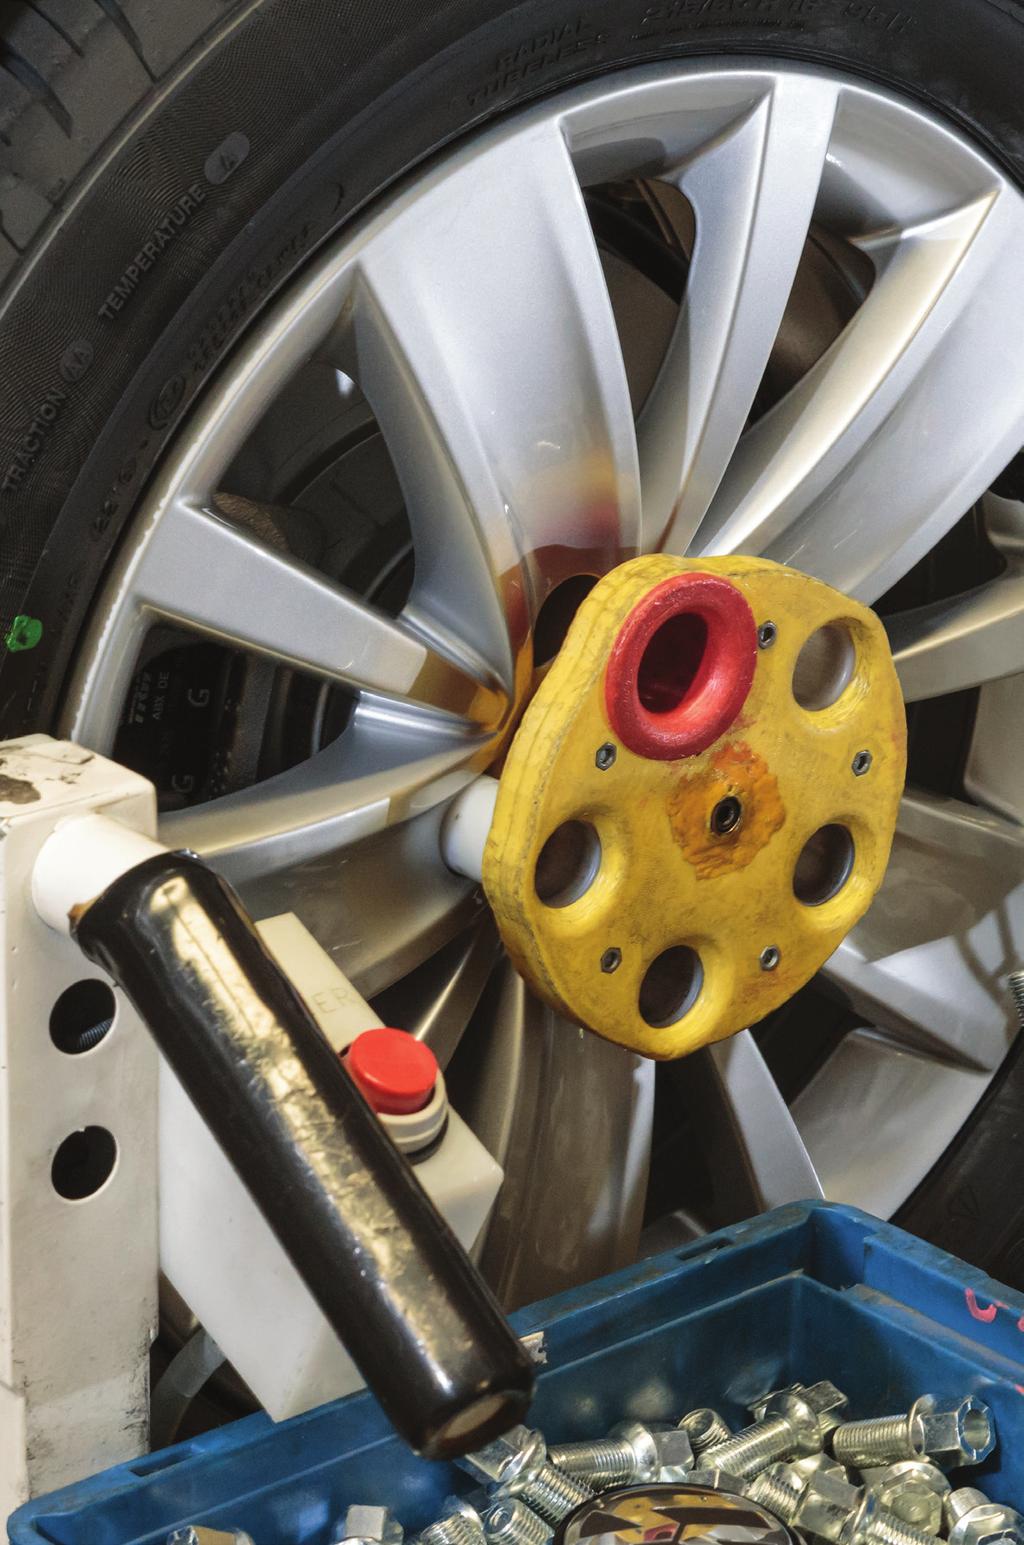 Protezioni dei cerchi Poka-Yoke Viene utilizzata durante il posizionamento e l assemblaggio per evitare graffi/danni alle ruote. Senza questa protezione, il costo degli scarti potrebbe essere ingente.